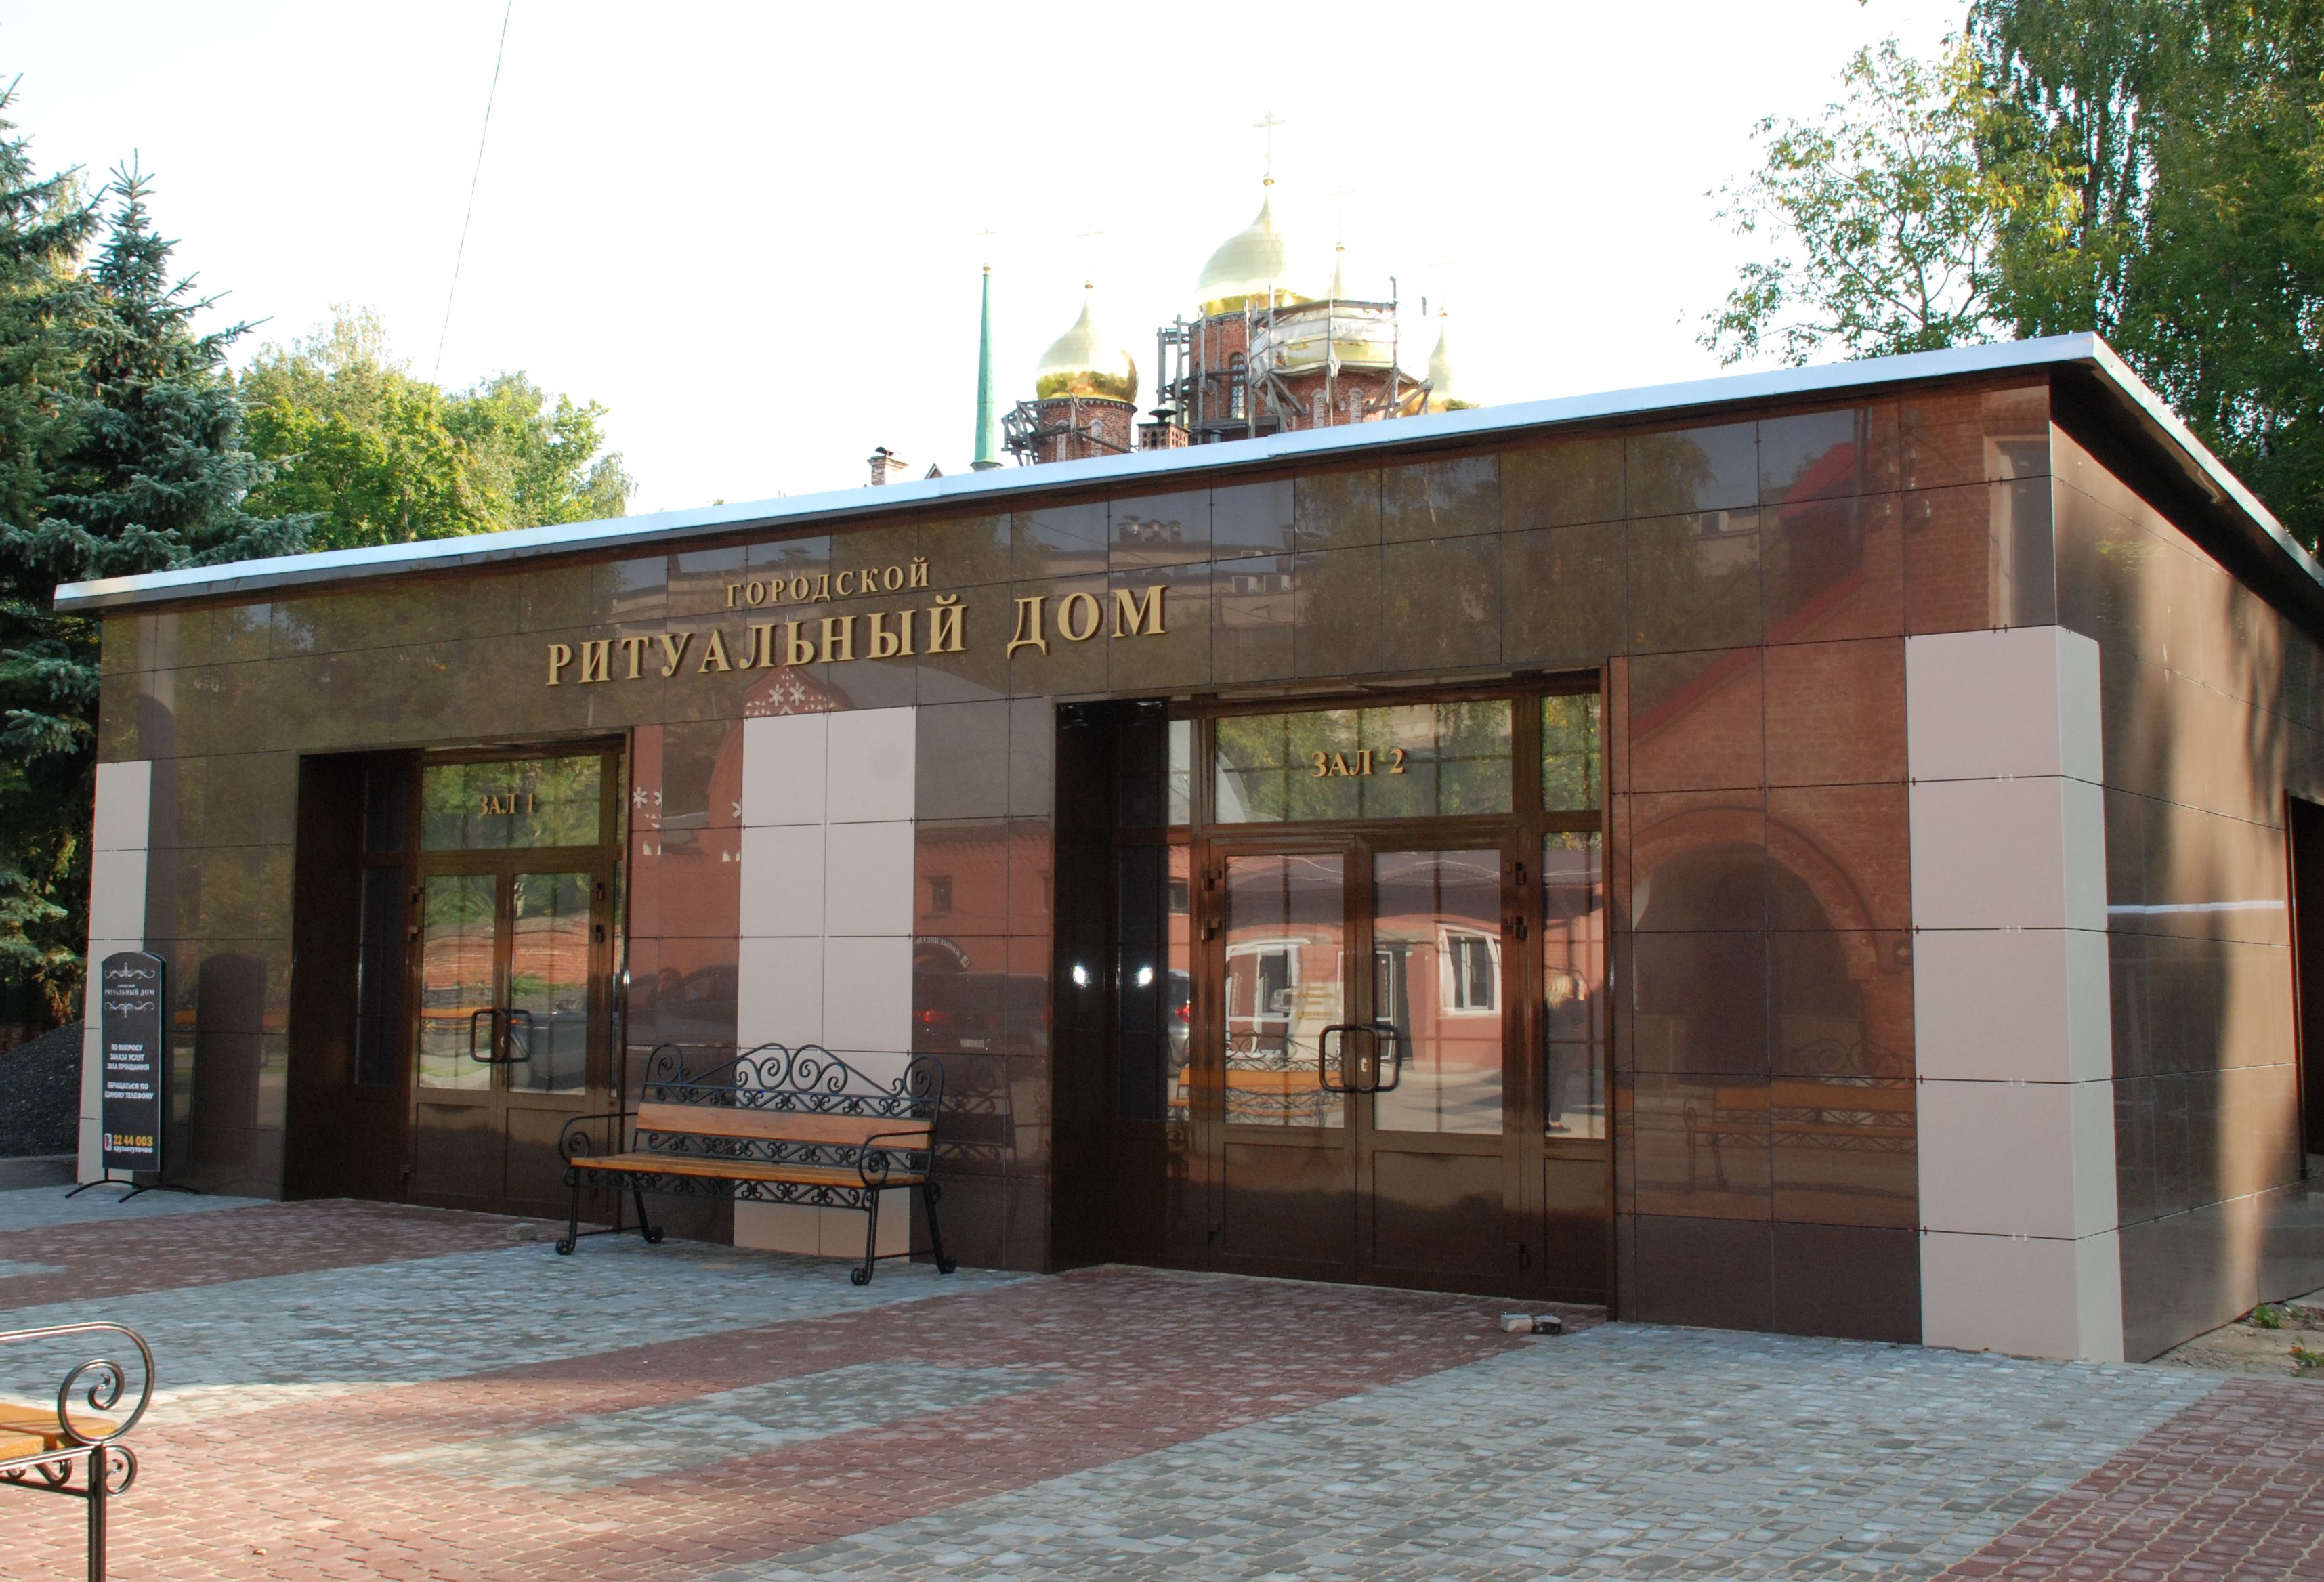 Работы по благоустройству Бугровского кладбища в Нижнем Новгороде вышли на завершающую стадию (ФОТО) - фото 2